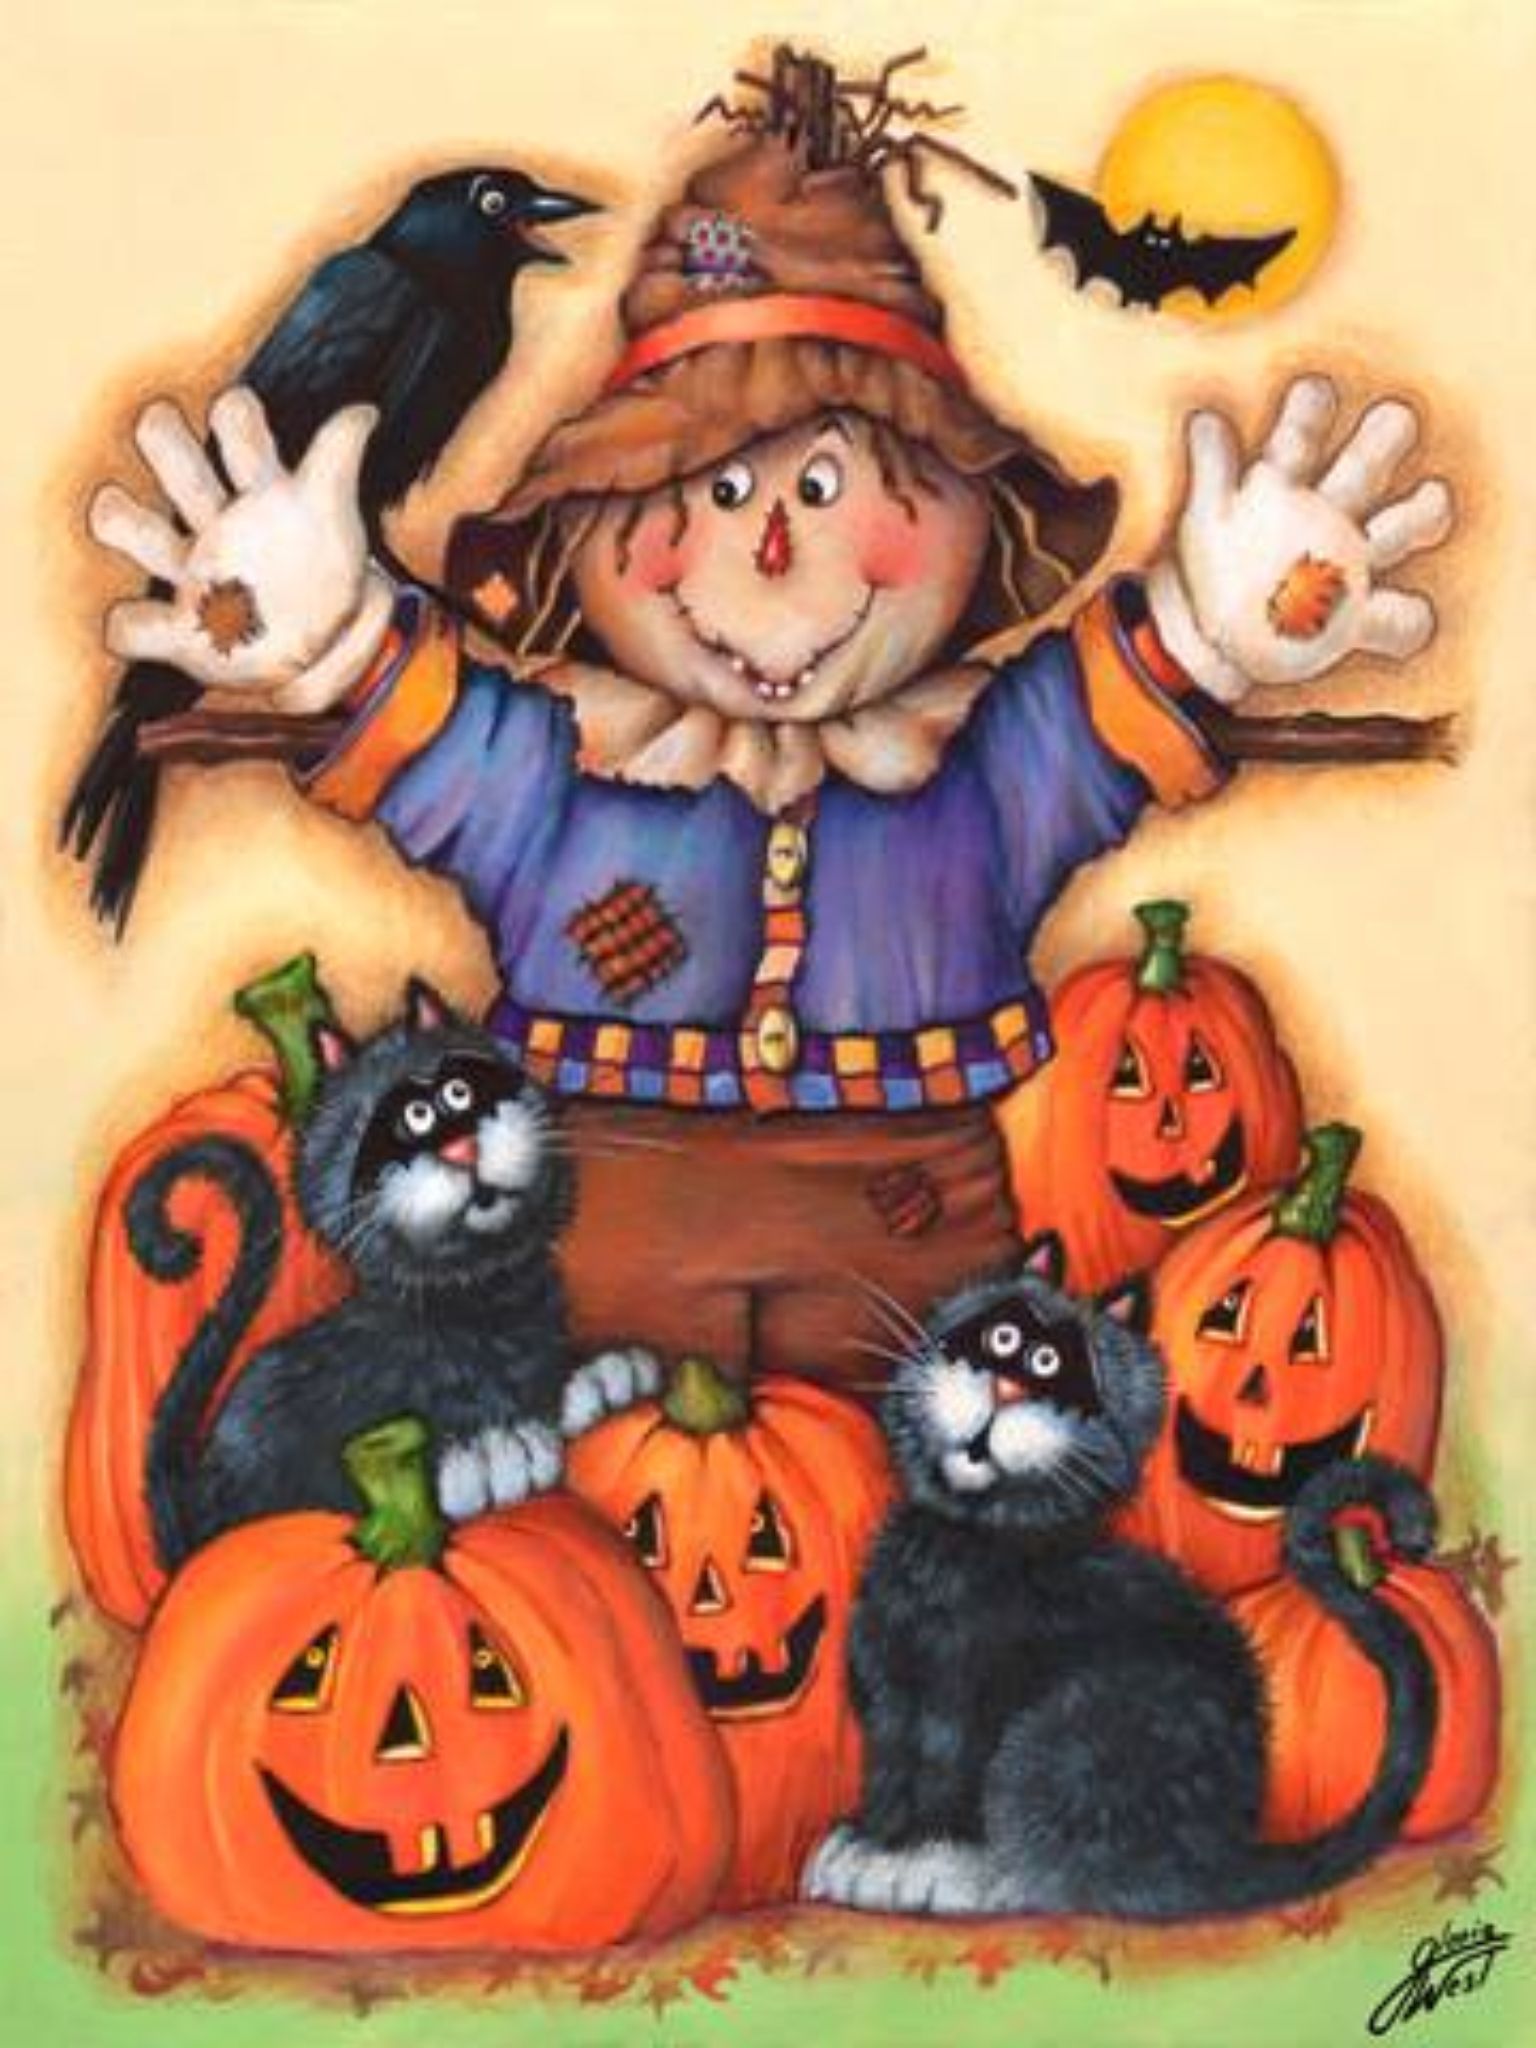 scarecrow clipart pumpkin patch